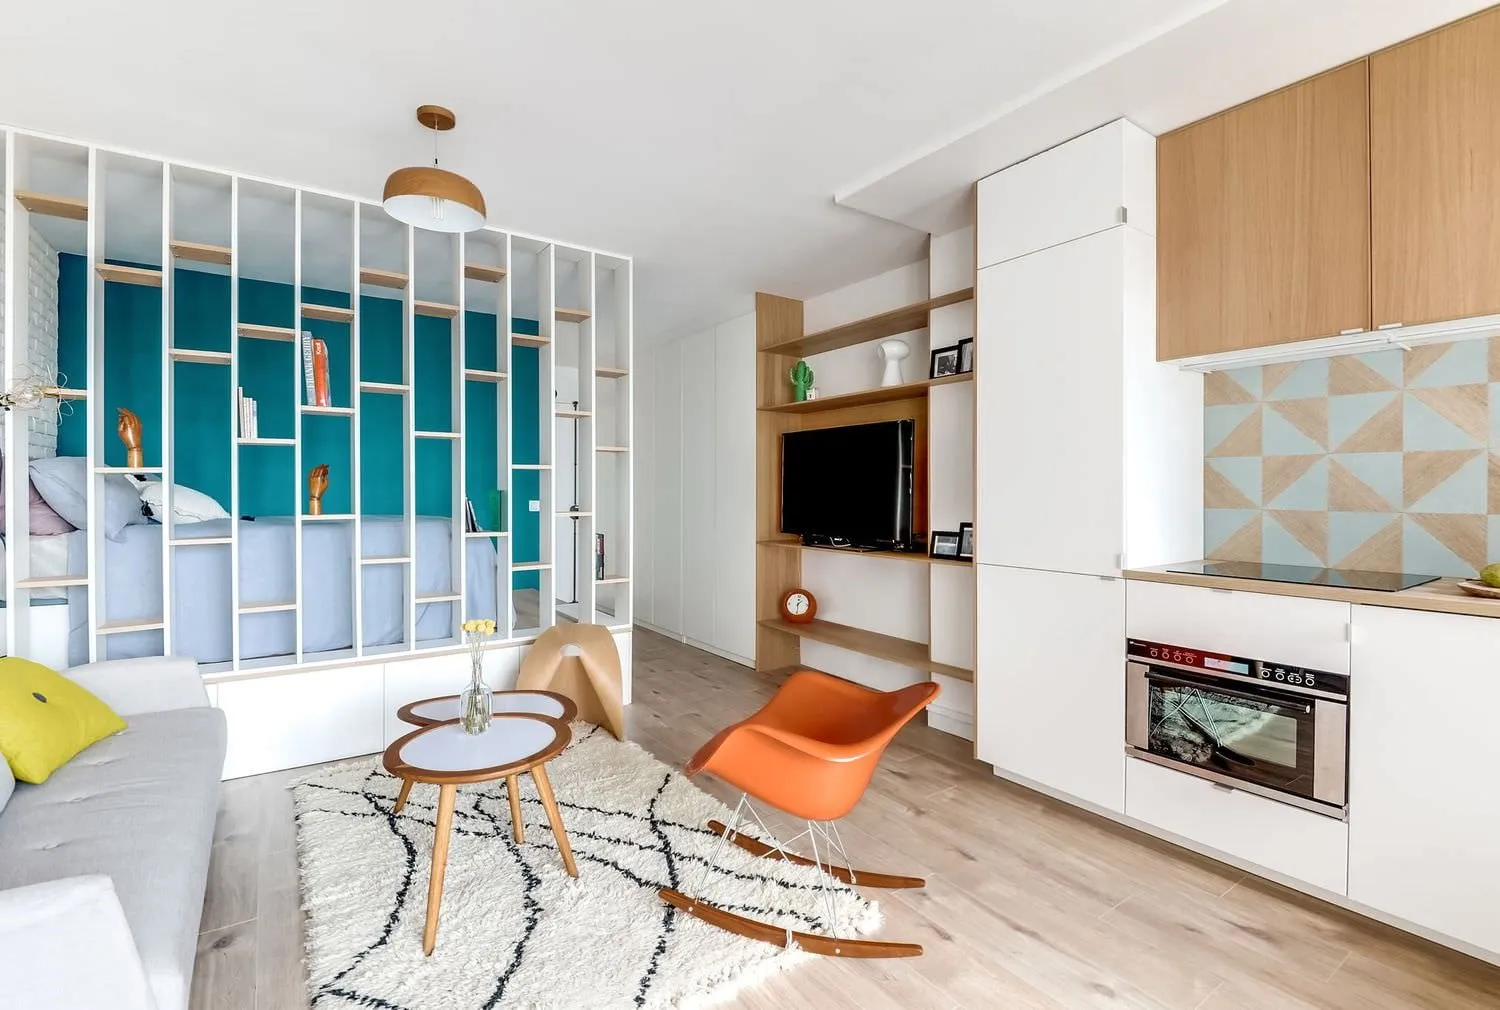 Дизайн интерьера квартиры-студии 23-25 м2, на примере ЖК «Воробьевы горы»